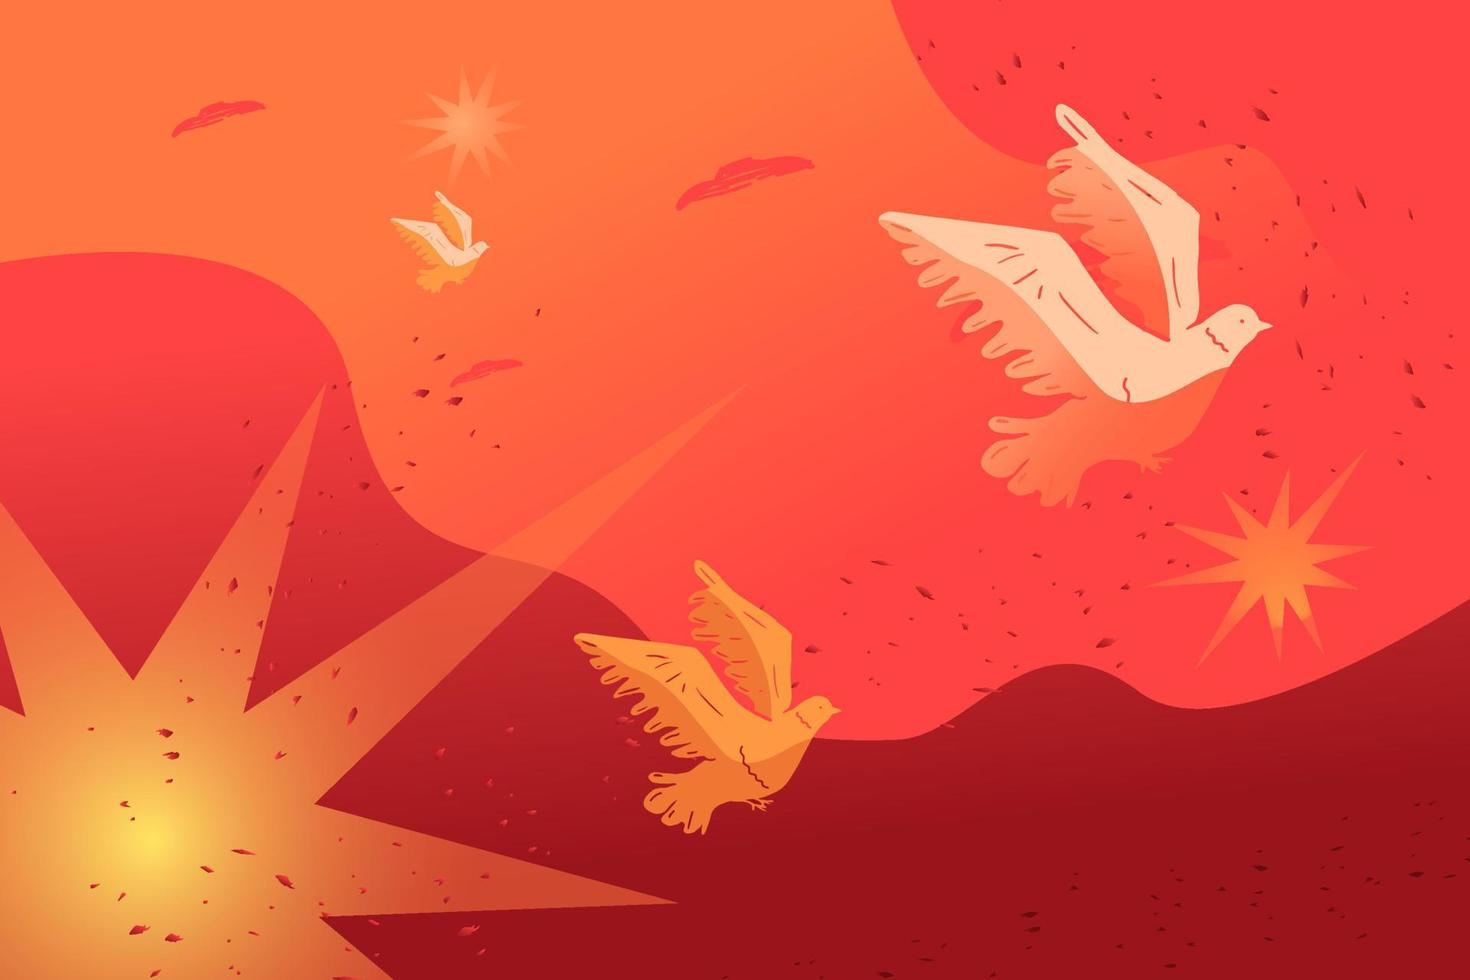 fliegende versengte Tauben vor einem Hintergrund aus rotem Himmel und Explosionen, eine Metapher für Ptsd unter Zivilisten nach dem Krieg. vektor